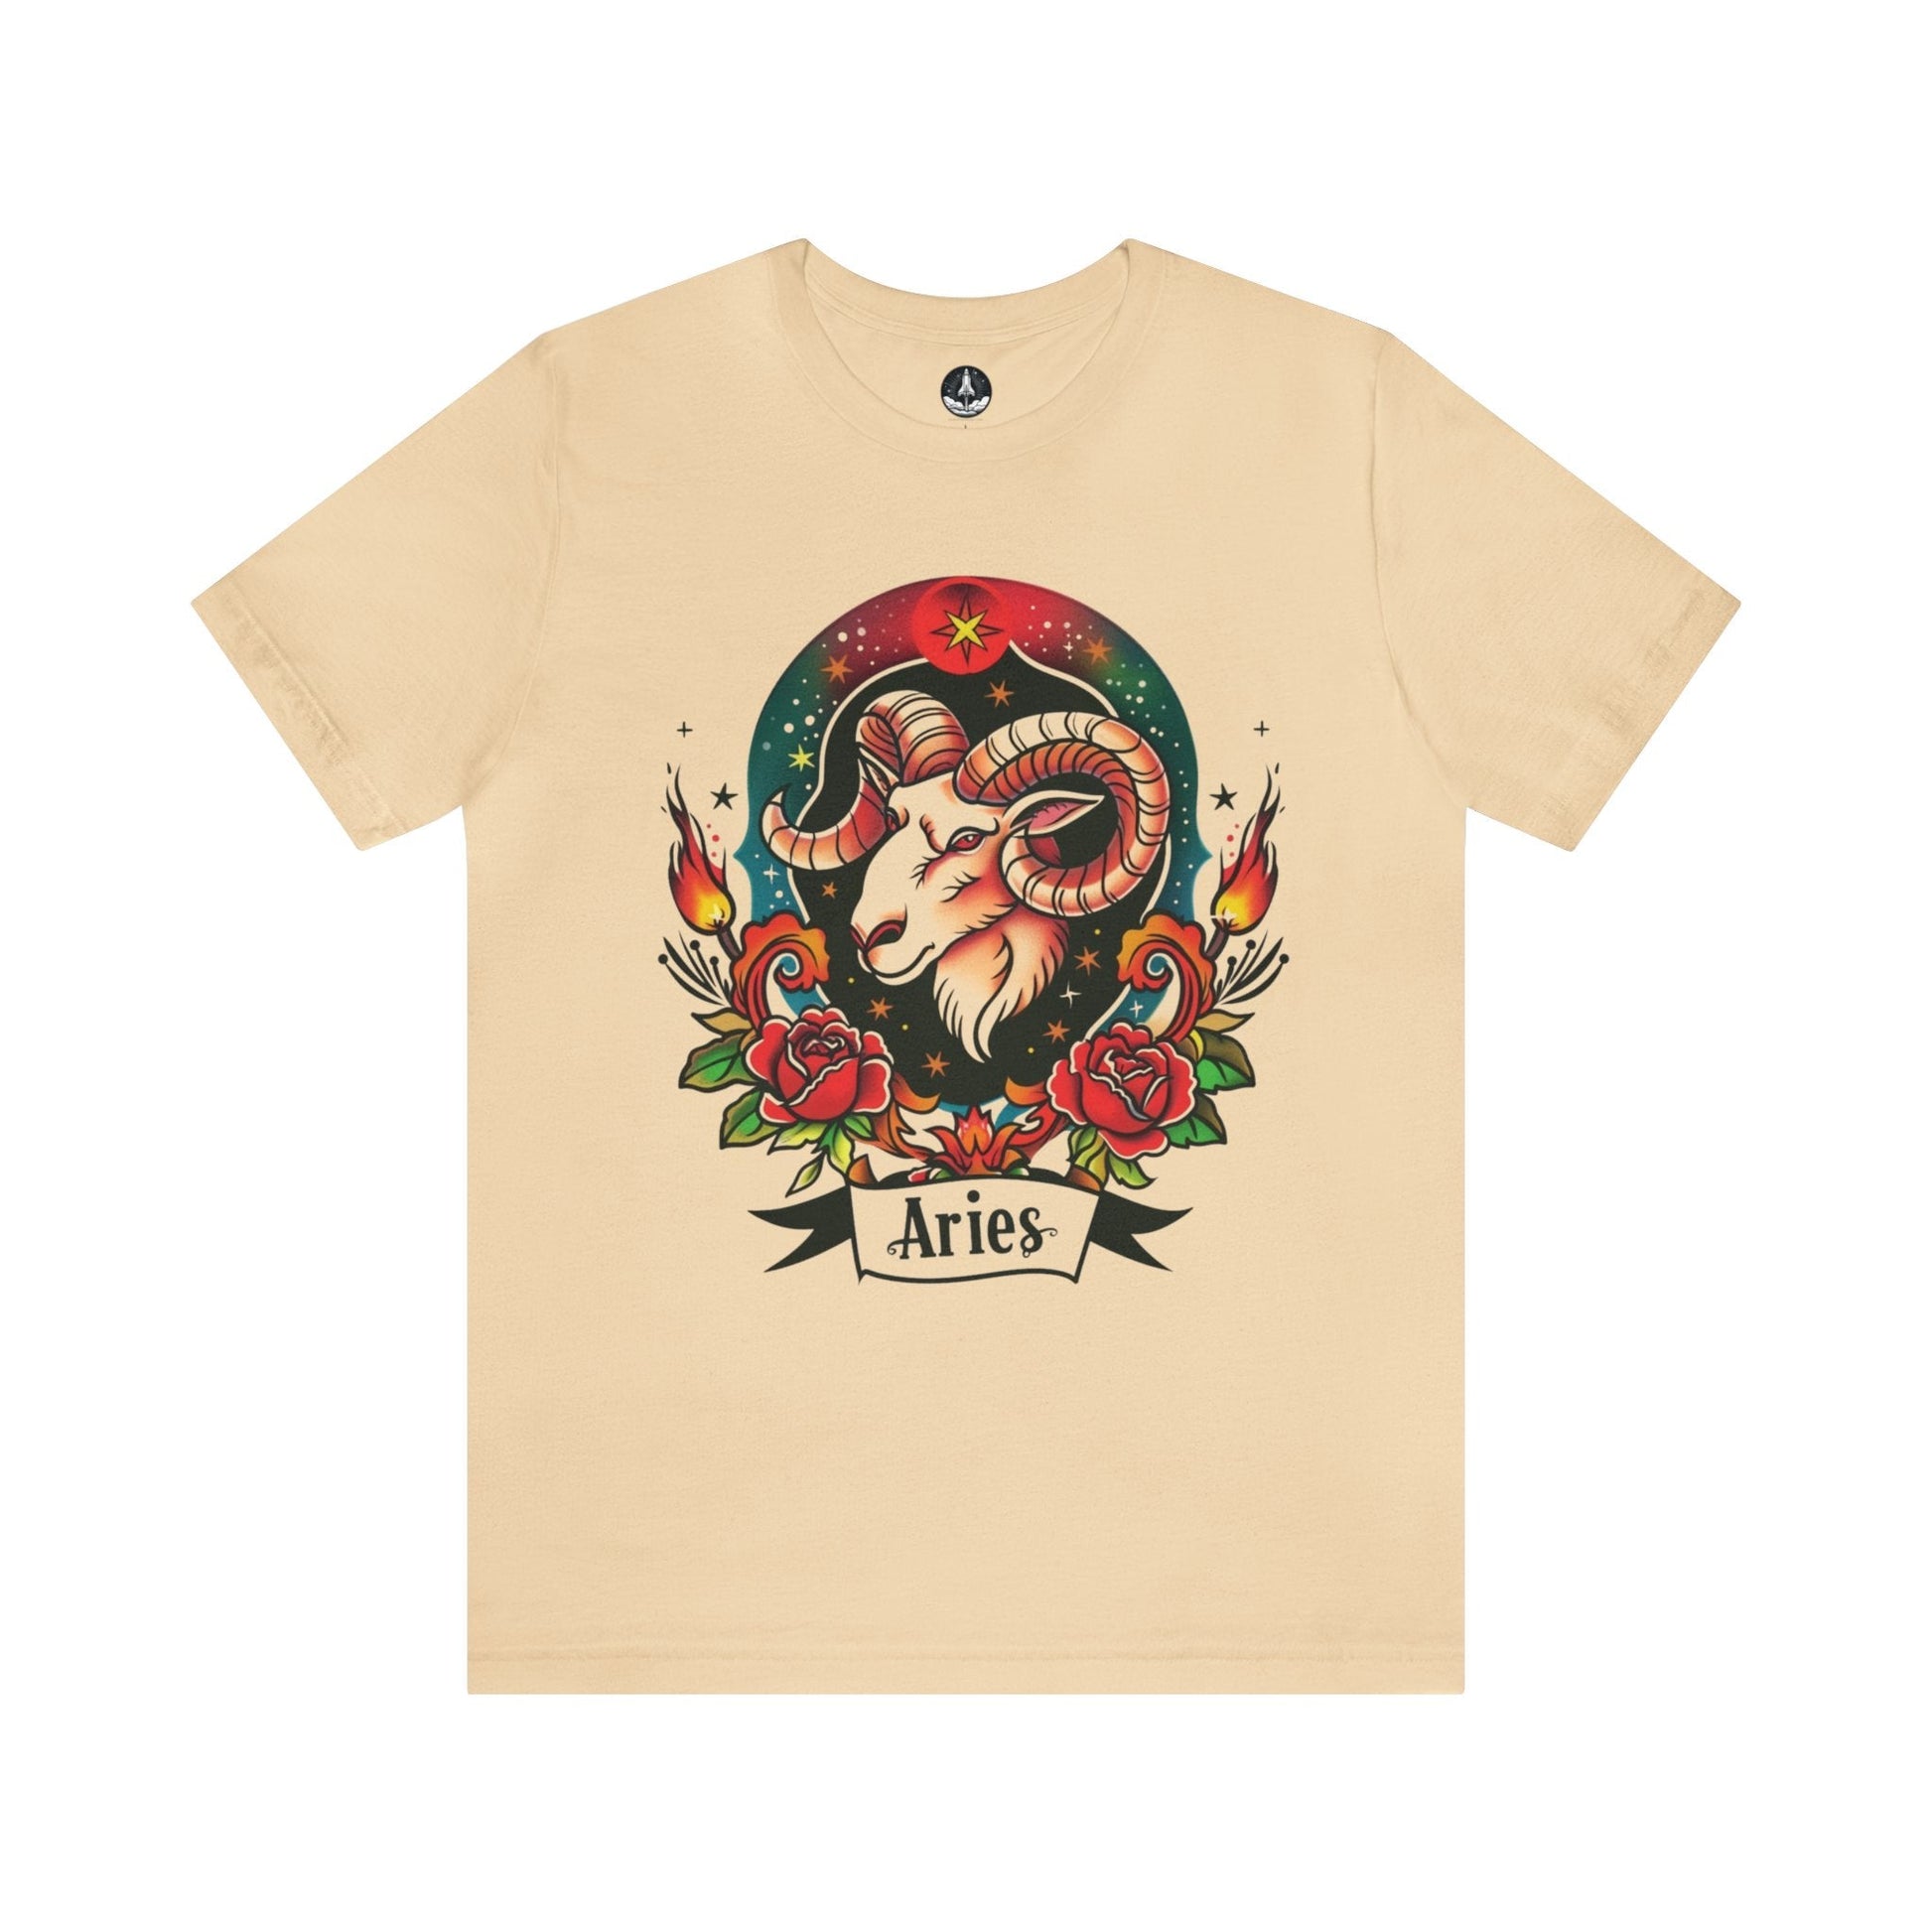 T-Shirt Soft Cream / S Fiery Aries Tattoo Art T-Shirt - Soft Cotton Zodiac-Inspired T-Shirt